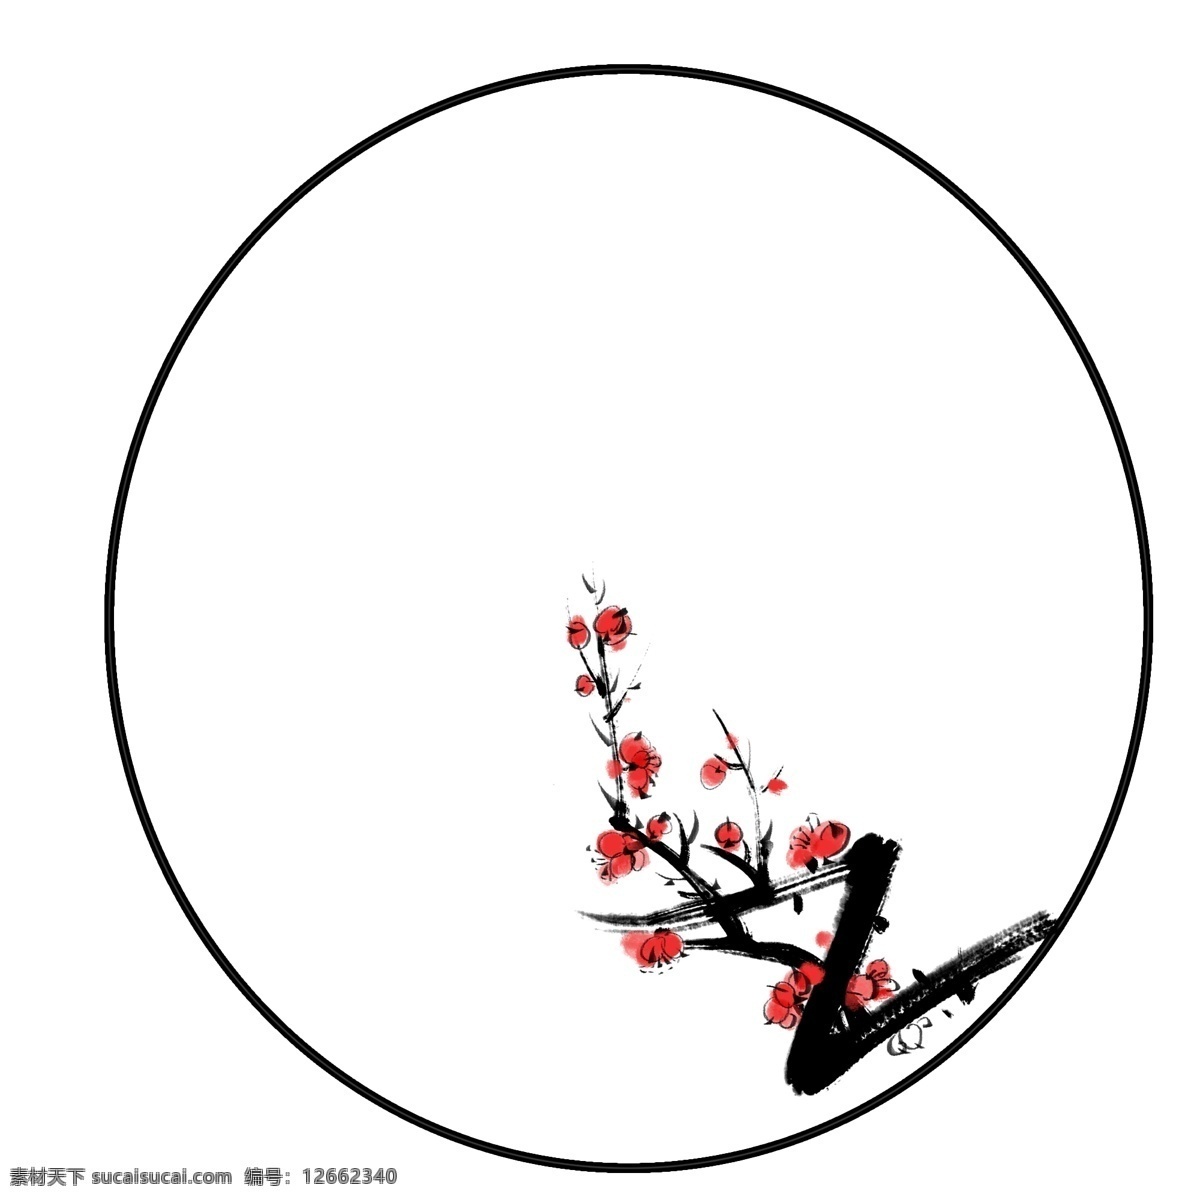 美丽 梅花 边框 插画 美丽的边框 卡通插画 梅花边框 花朵 鲜花 花束 花瓣 花枝 圆圆的边框